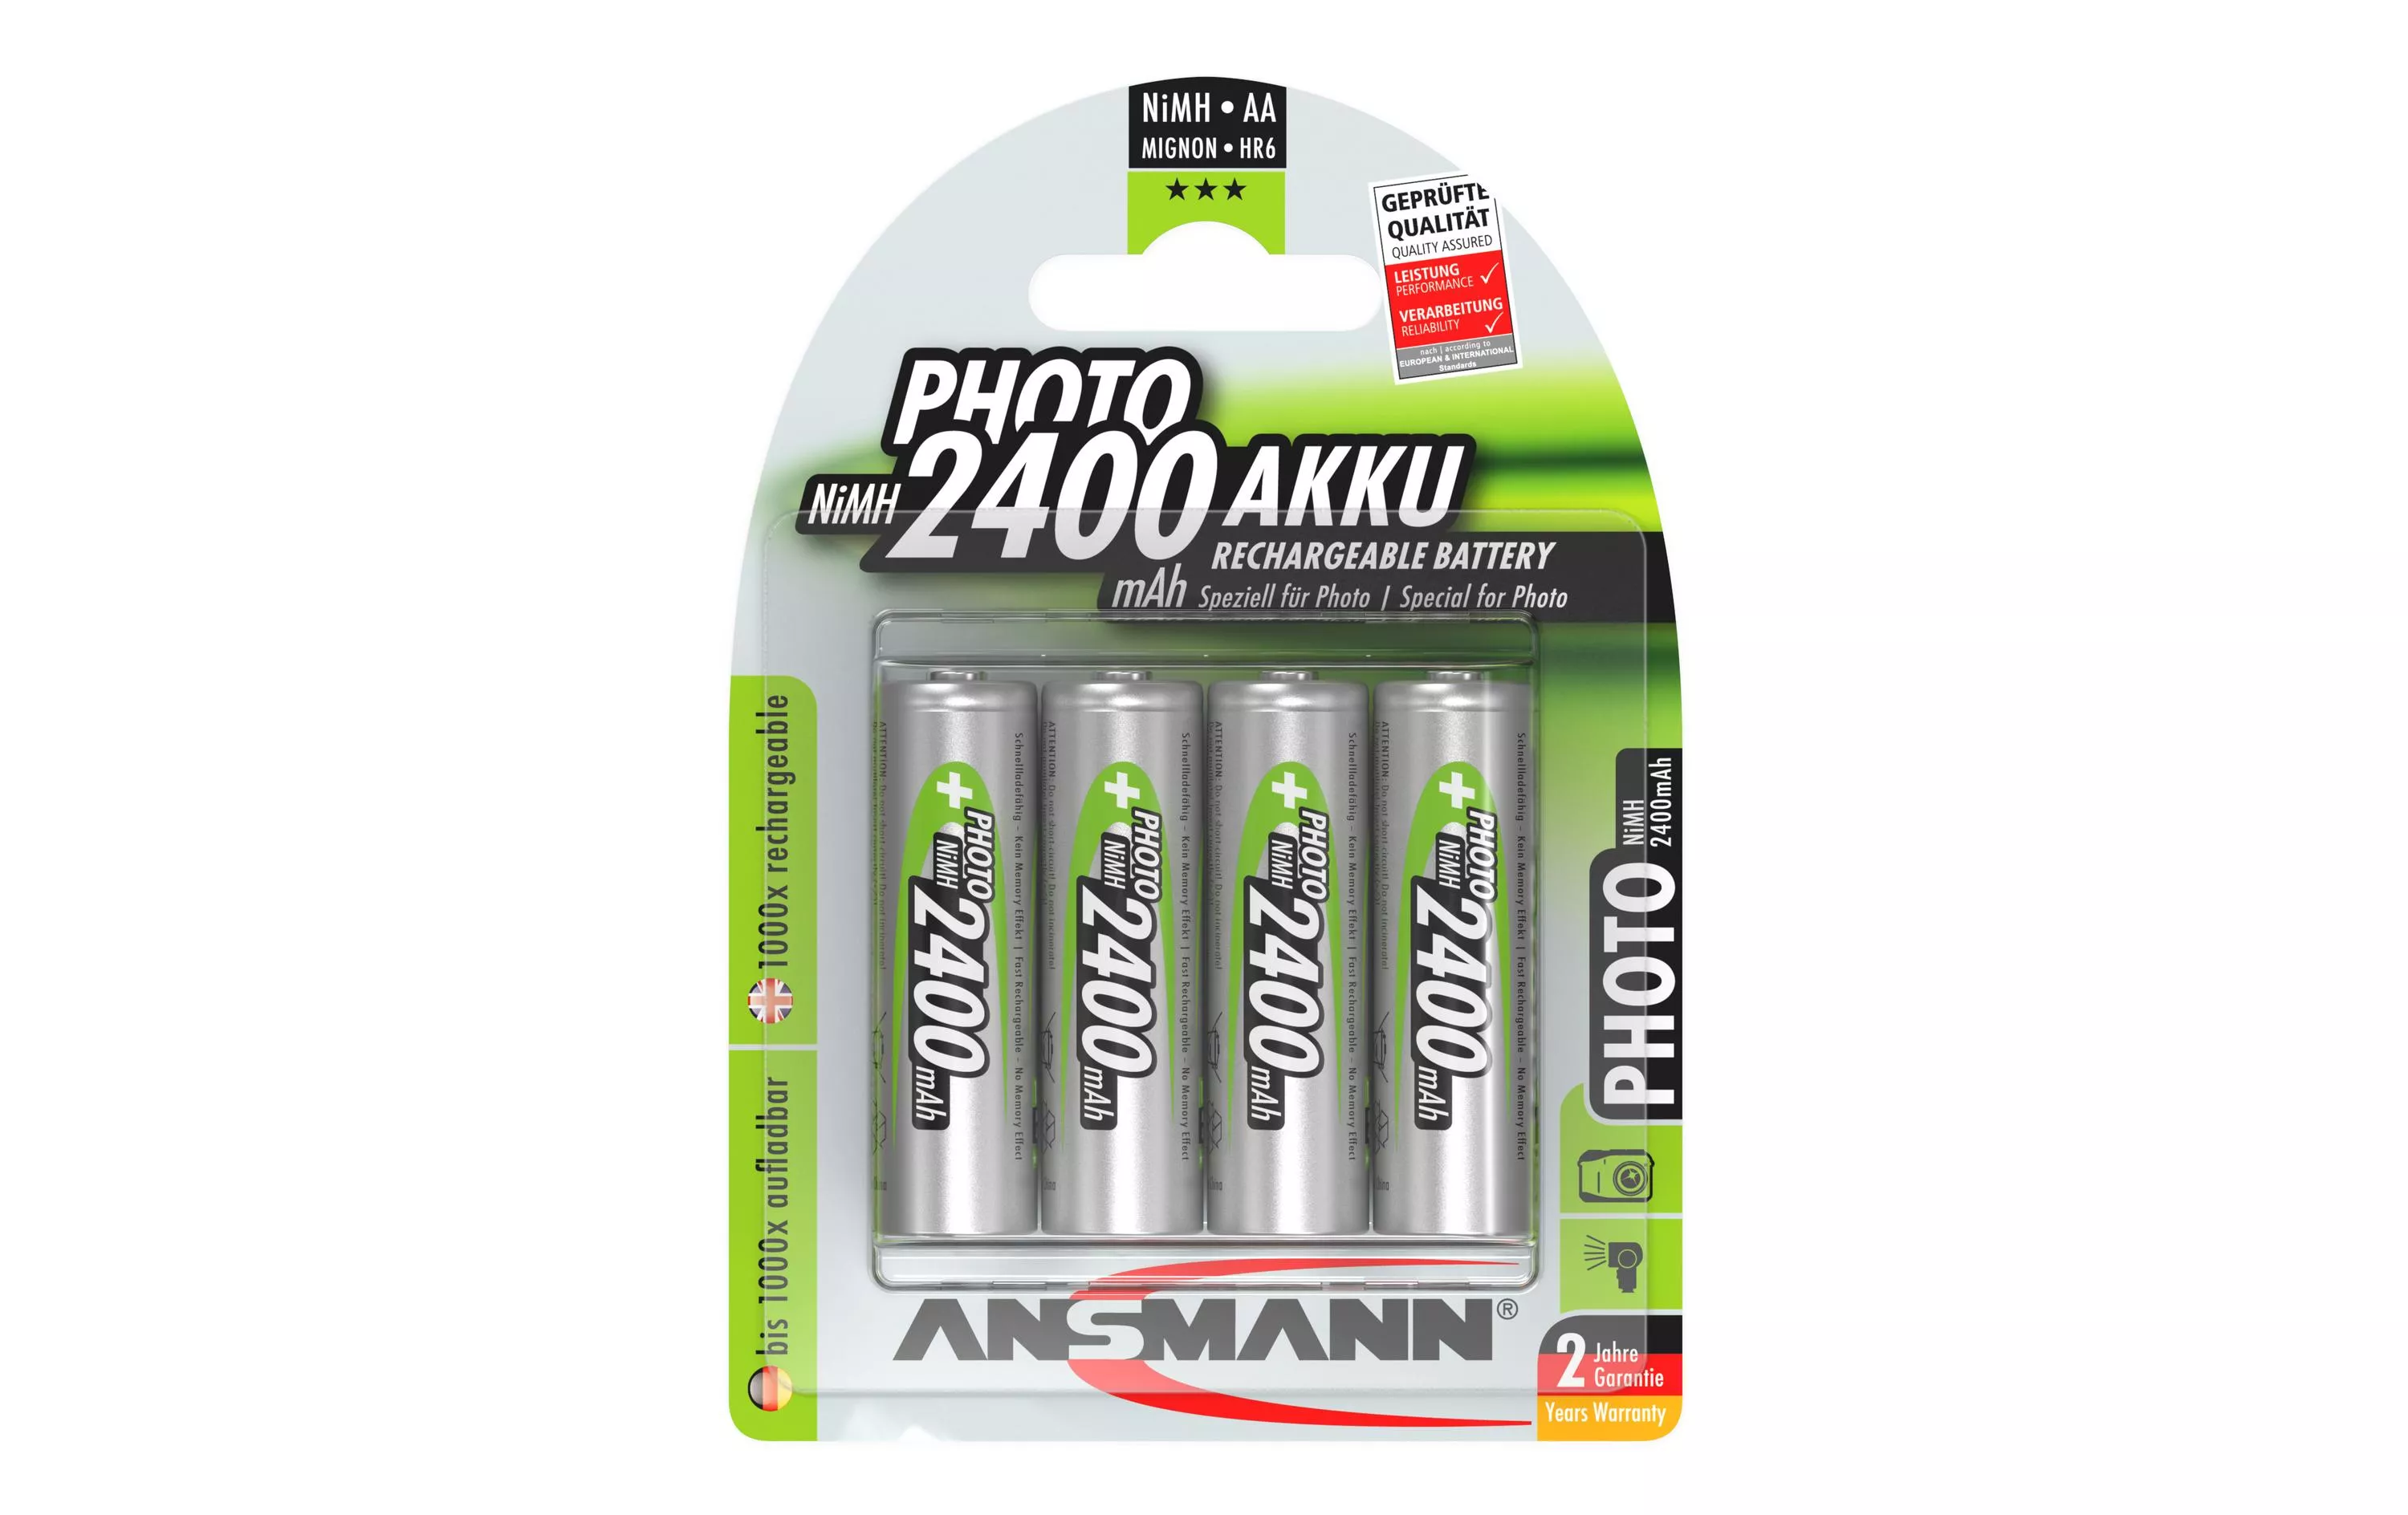 Batteria ricaricabile Ansmann 4x AA 2400 mAh per fotocamere digitali, flash, ecc.